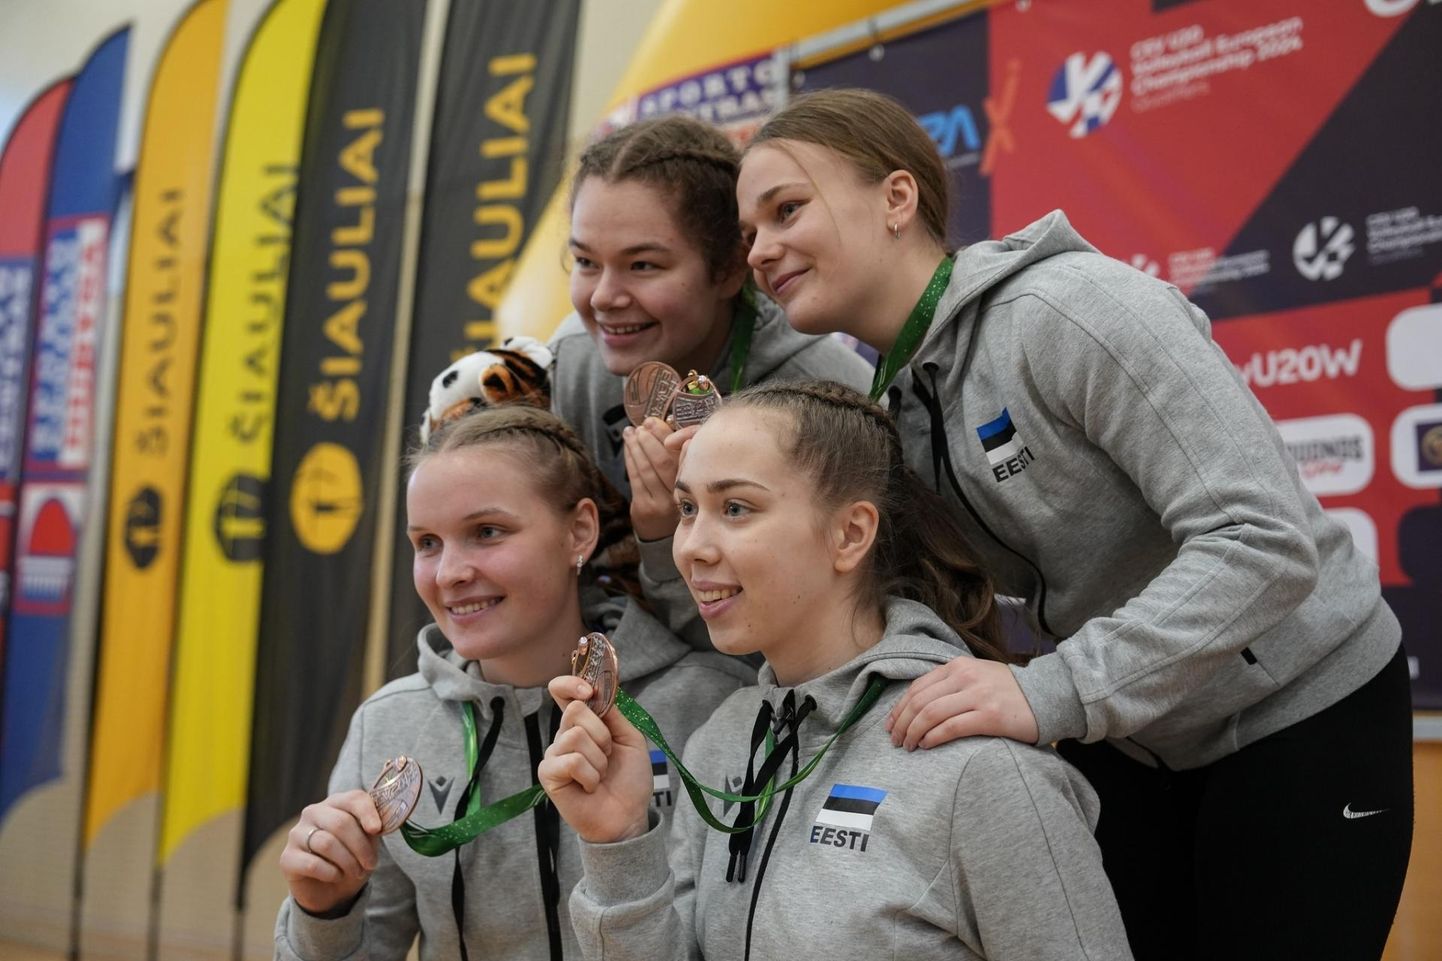 Viljandi võrkpallitüdrukud (ees vasakult) Maarja Allik, Kaisa Rei, (taga vasakult) Janelle Leenurm ja Emma Vilberg teenisid Eesti U20 vanuseklassi tütarlaste koondise koosseisus EEVZA turniiril pronksmedali.